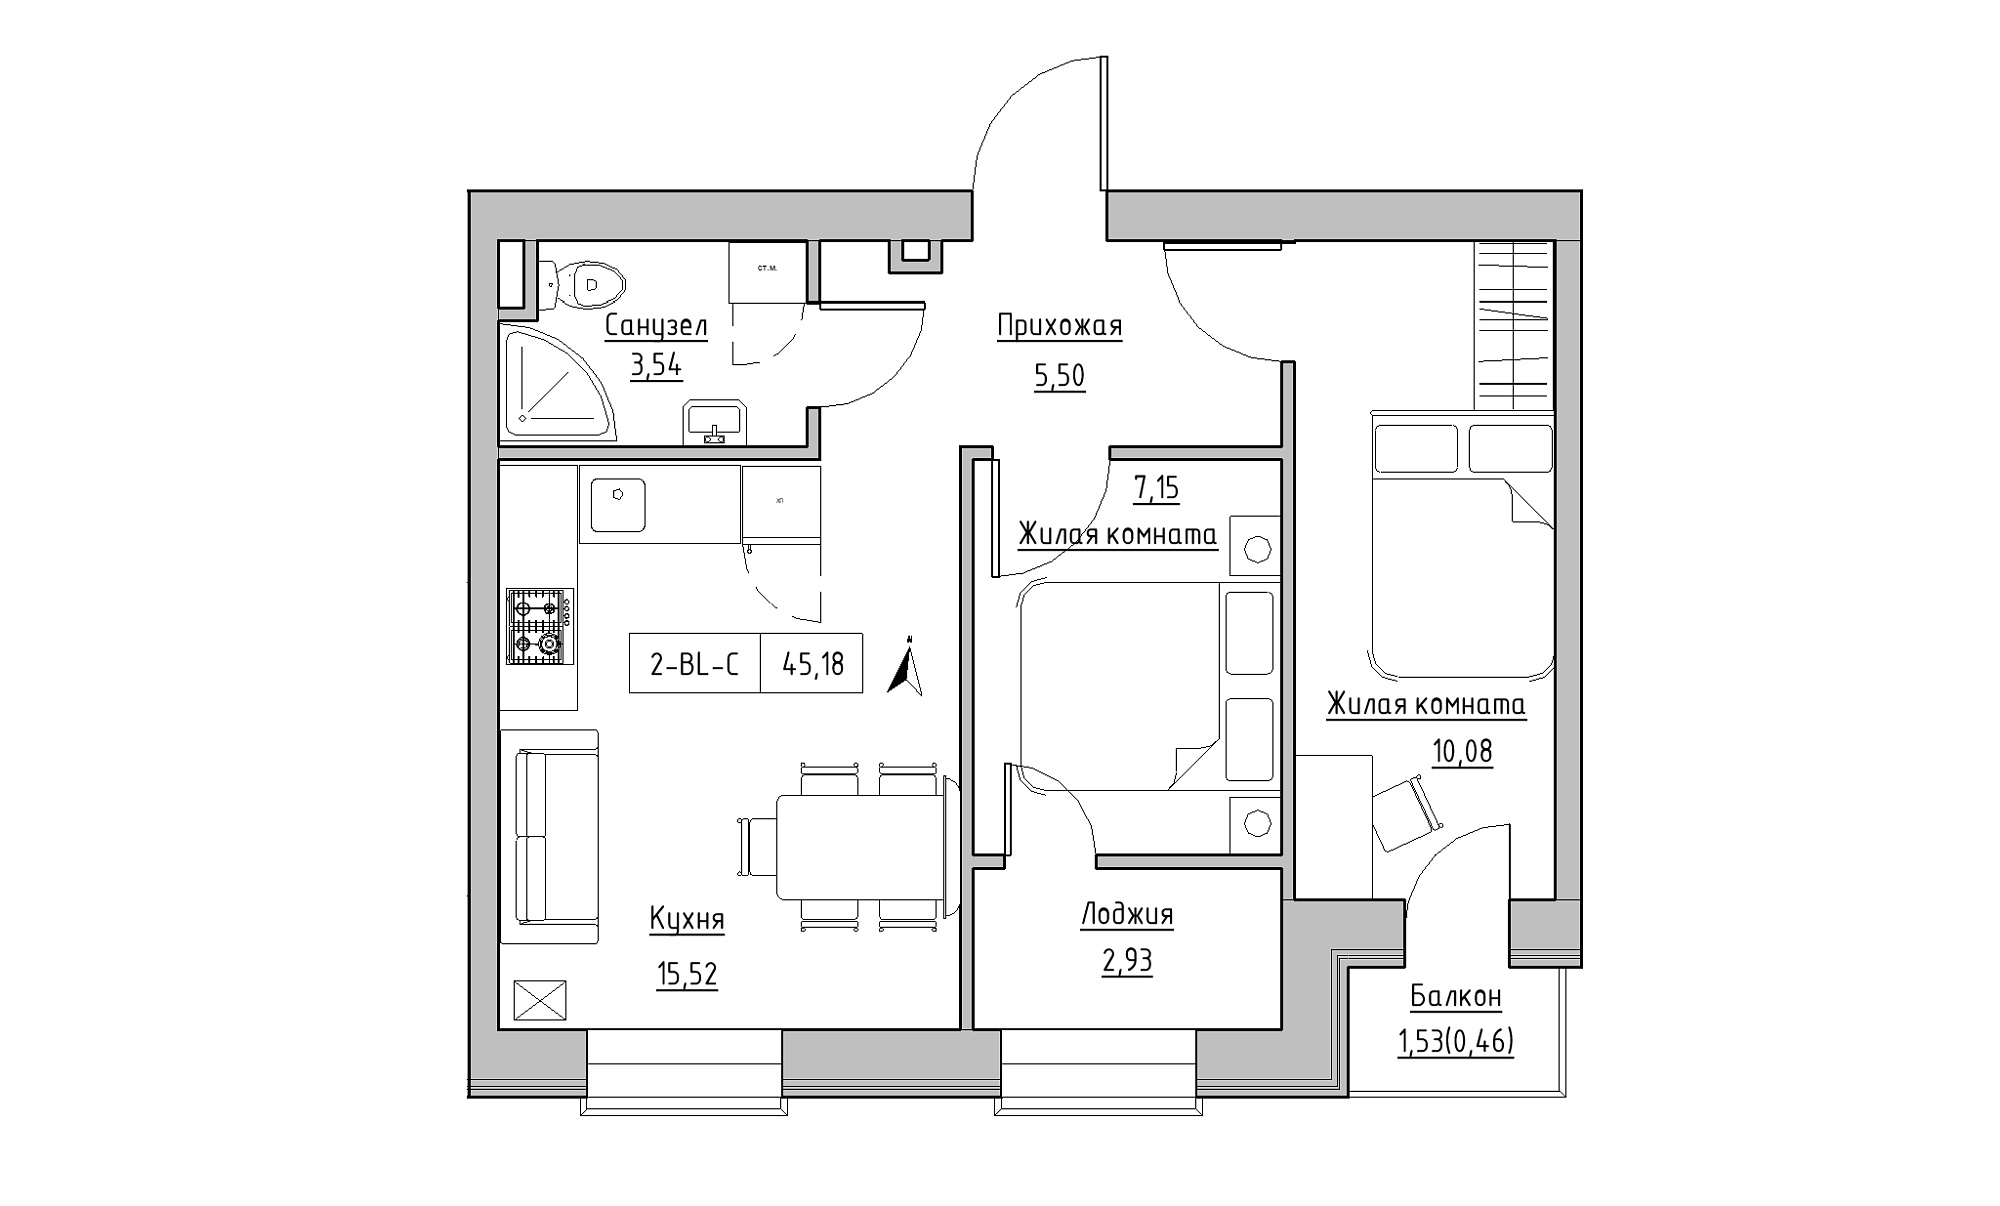 Планування 2-к квартира площею 45.18м2, KS-023-02/0009.